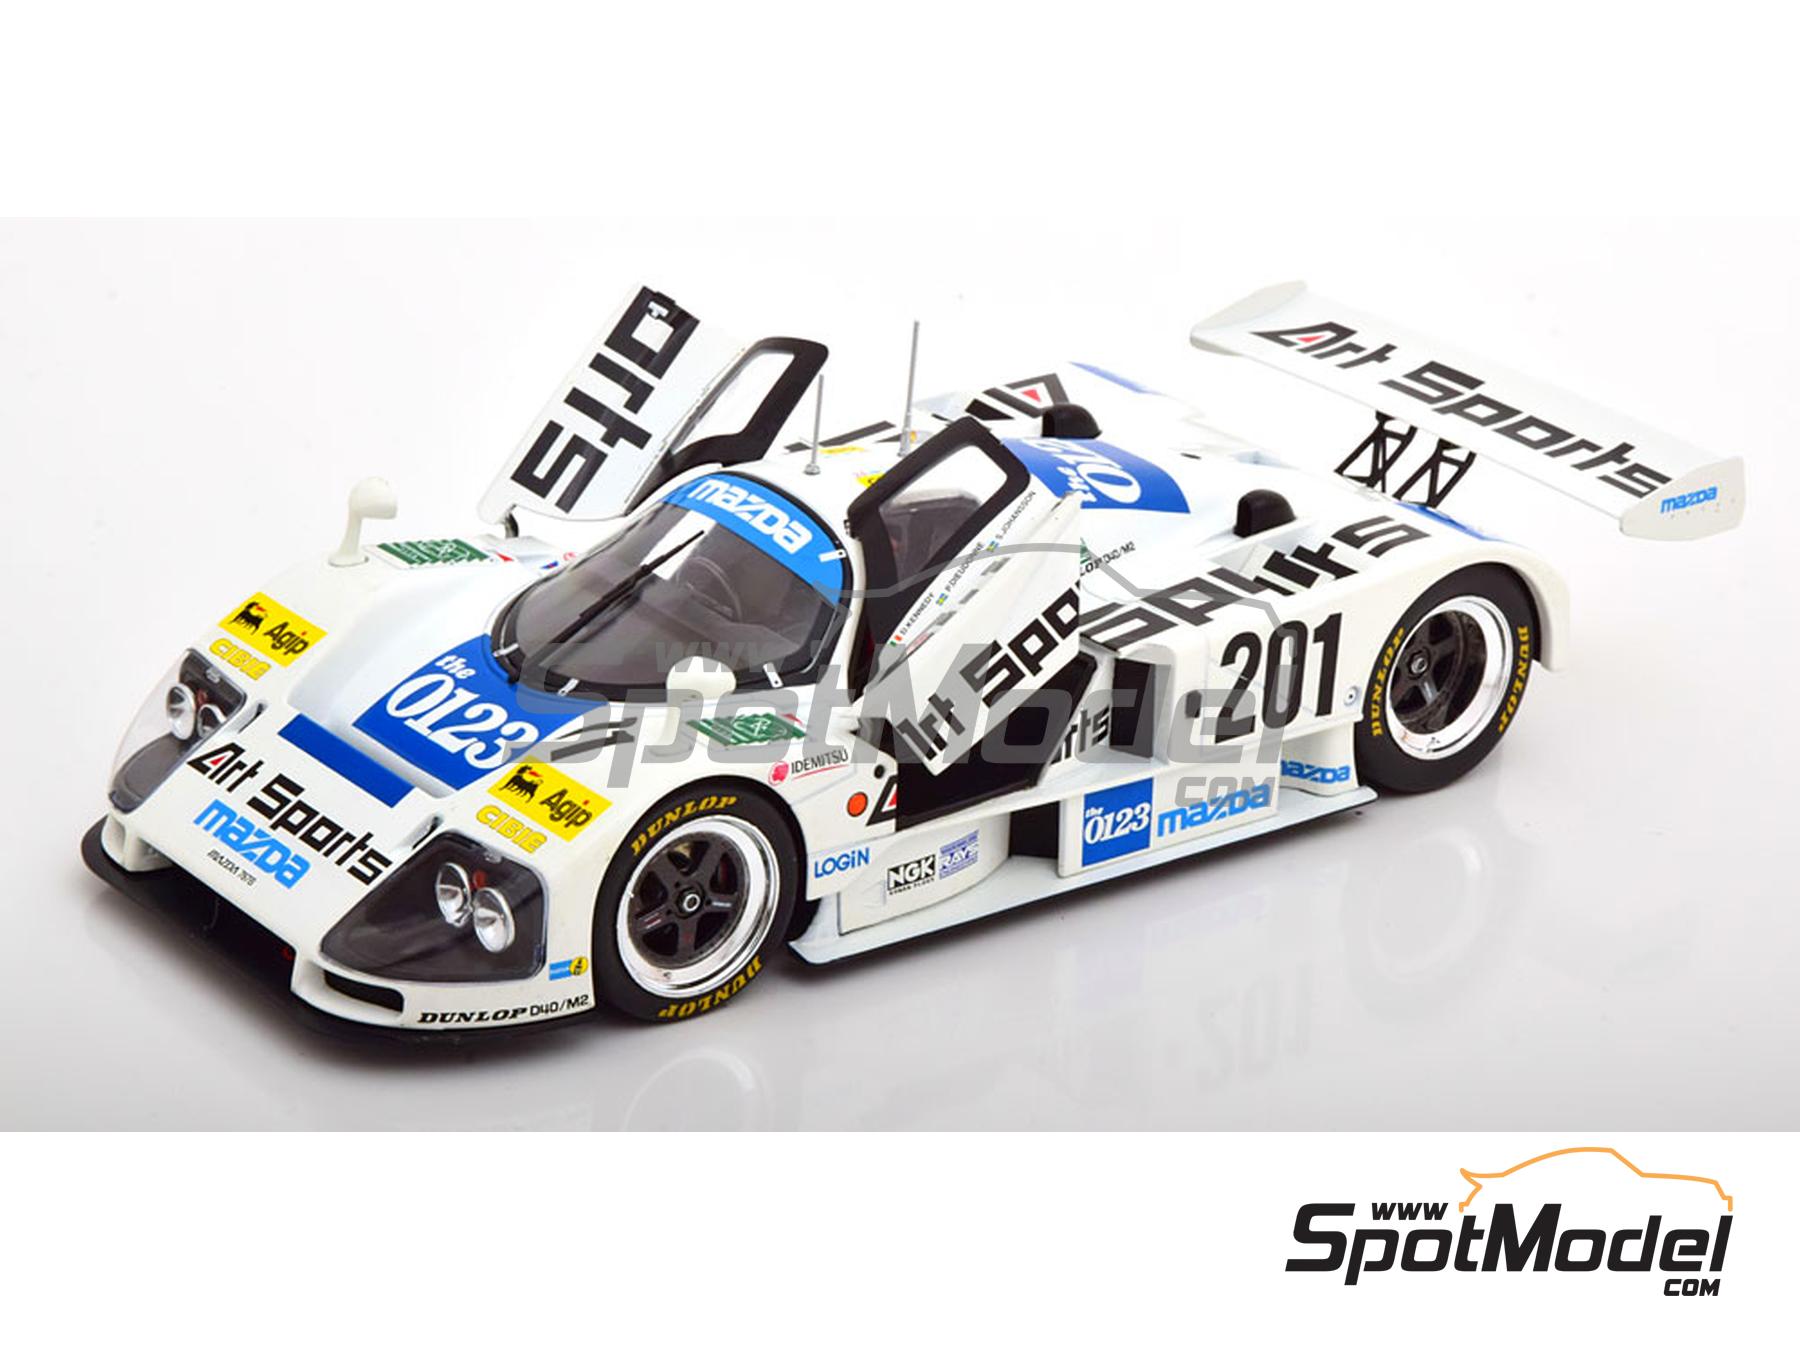 KK Scale KKDC181334: Diecast model car 1/18 scale - Mazda 787B Mazdaspeed  Team sponsored by Art Sports #201 - Stefan Johansson (SE) + Pierre  Dieudonne (BE) + David Kennedy (IE) - 24 Hours Le Mans 1990 (ref.  DIE-59915) | SpotModel